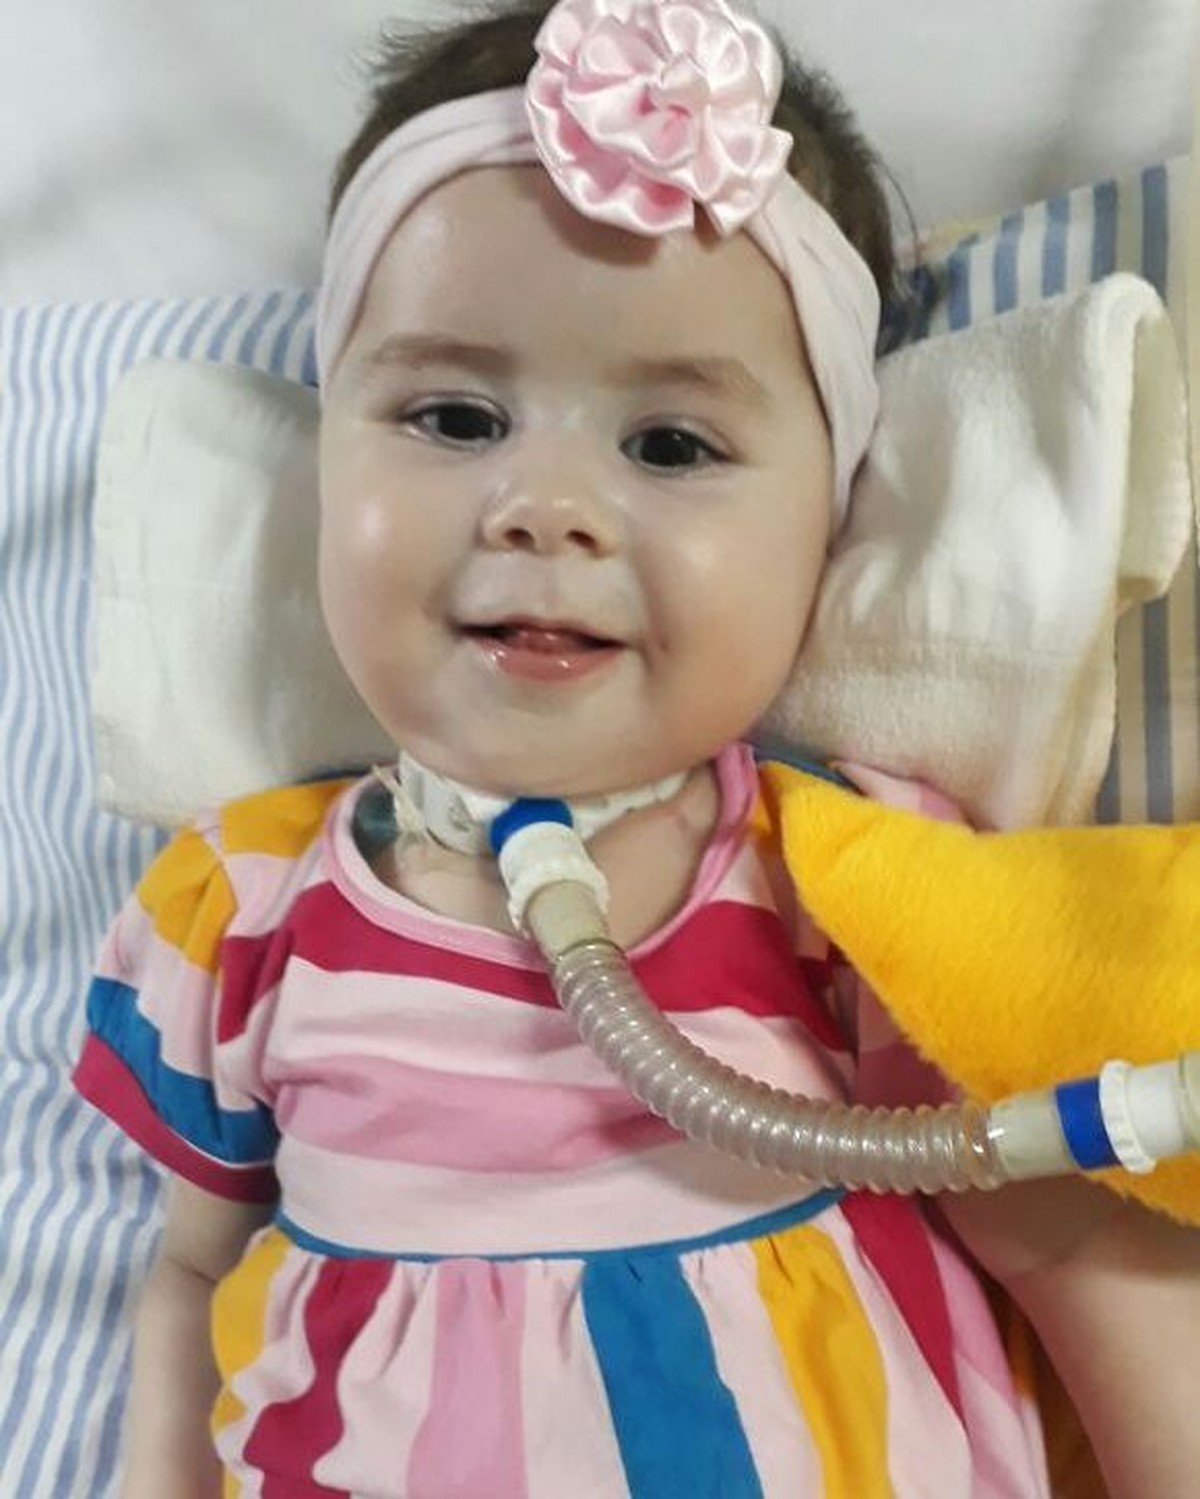 G1 - Doença rara em menina de 2 anos mobiliza campanha de família